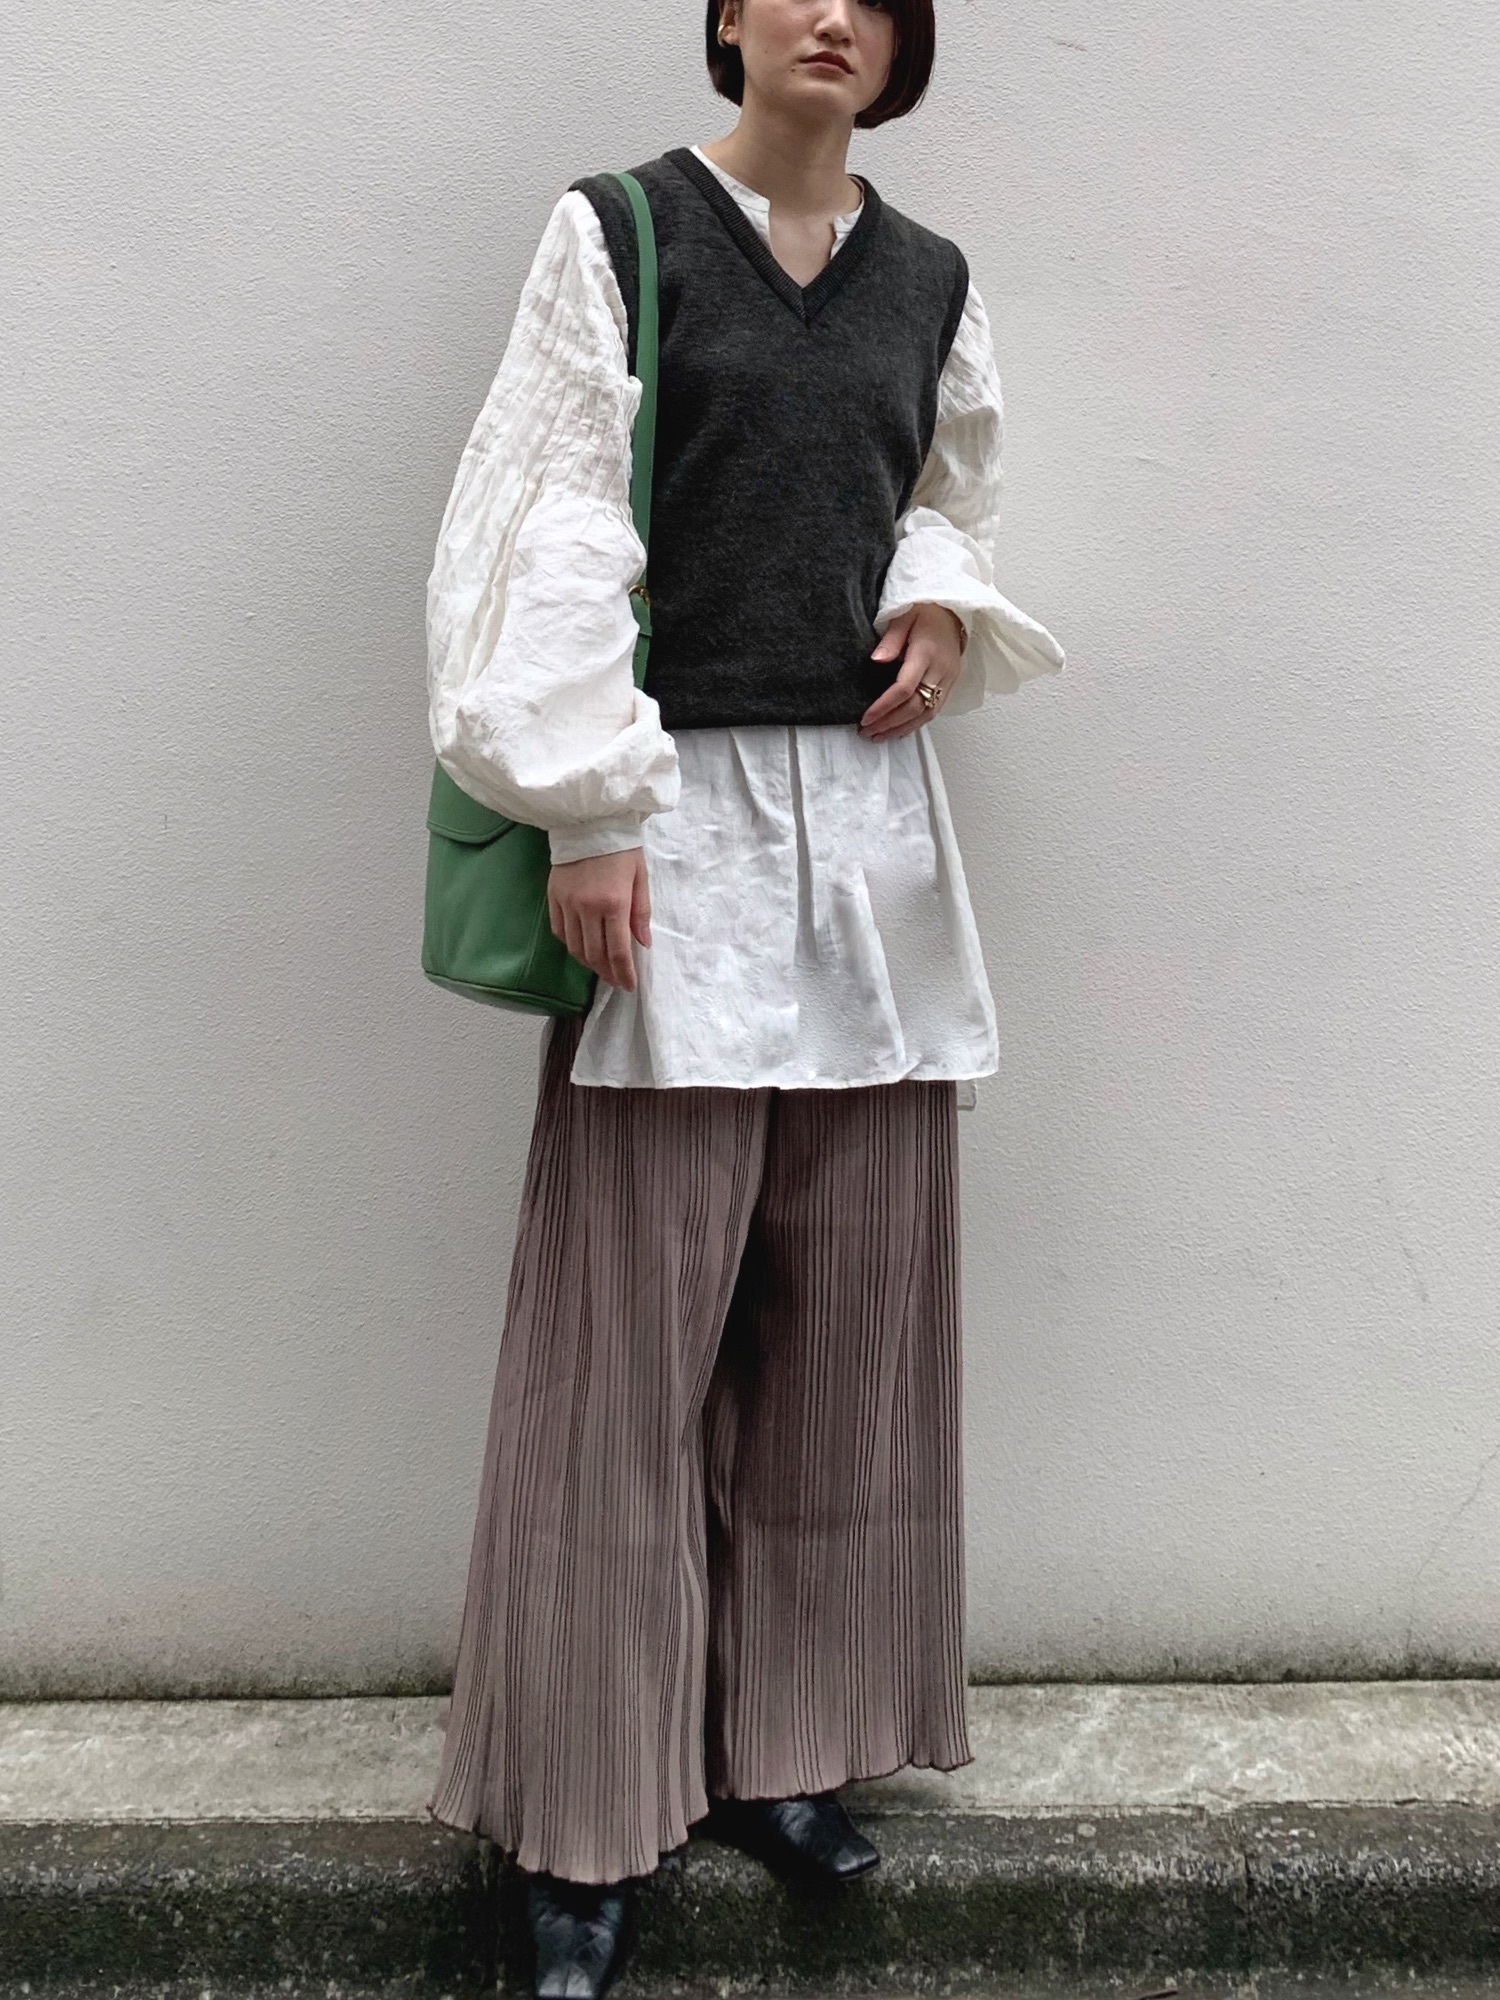 JUN MIKAMIのシャツ/ブラウスを使った人気ファッションコーディネート